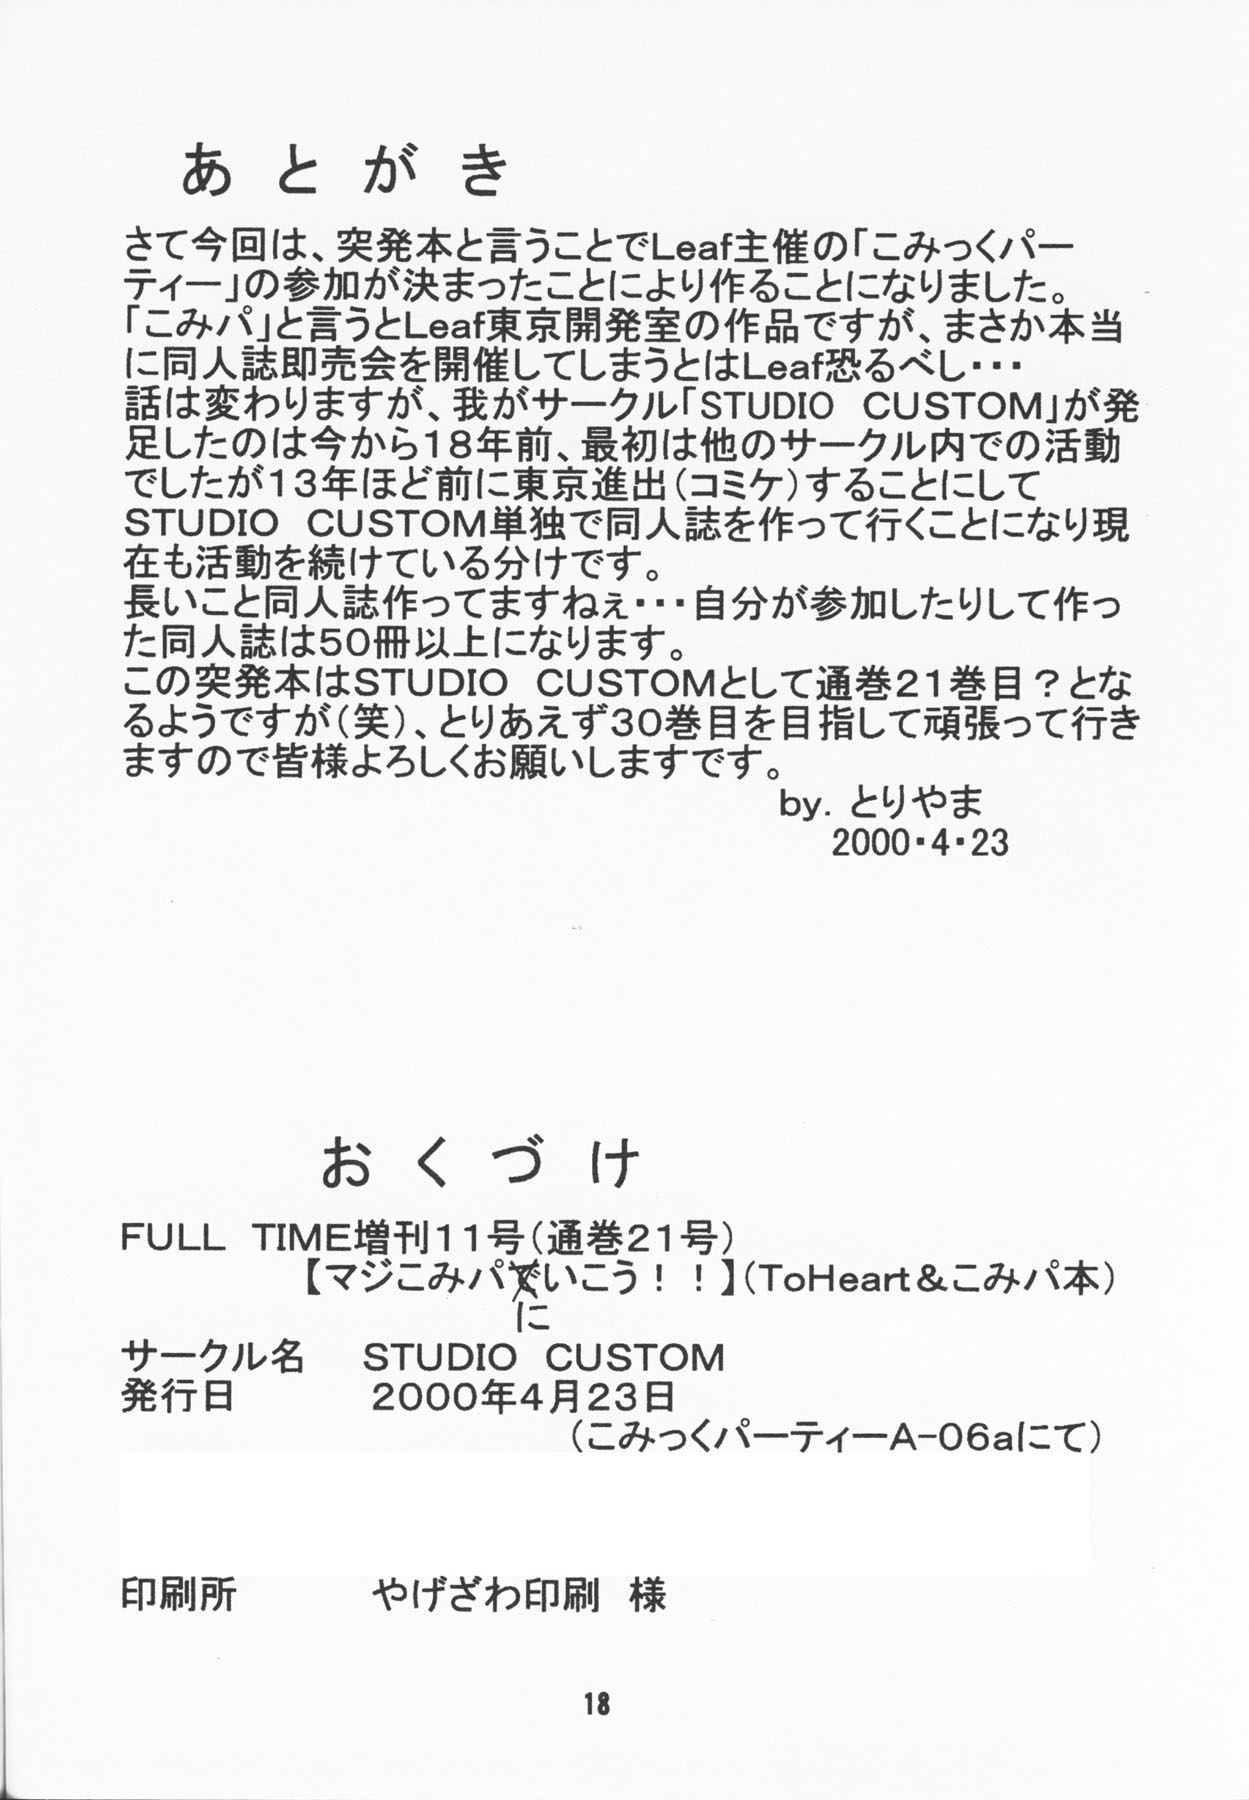 (こみっくパーティー) [STUDIO CUSTOM (おすしやすけろく)] FULL TIME増刊11号 マジこみパにいこう!! (トゥハート、こみっくパーティー)